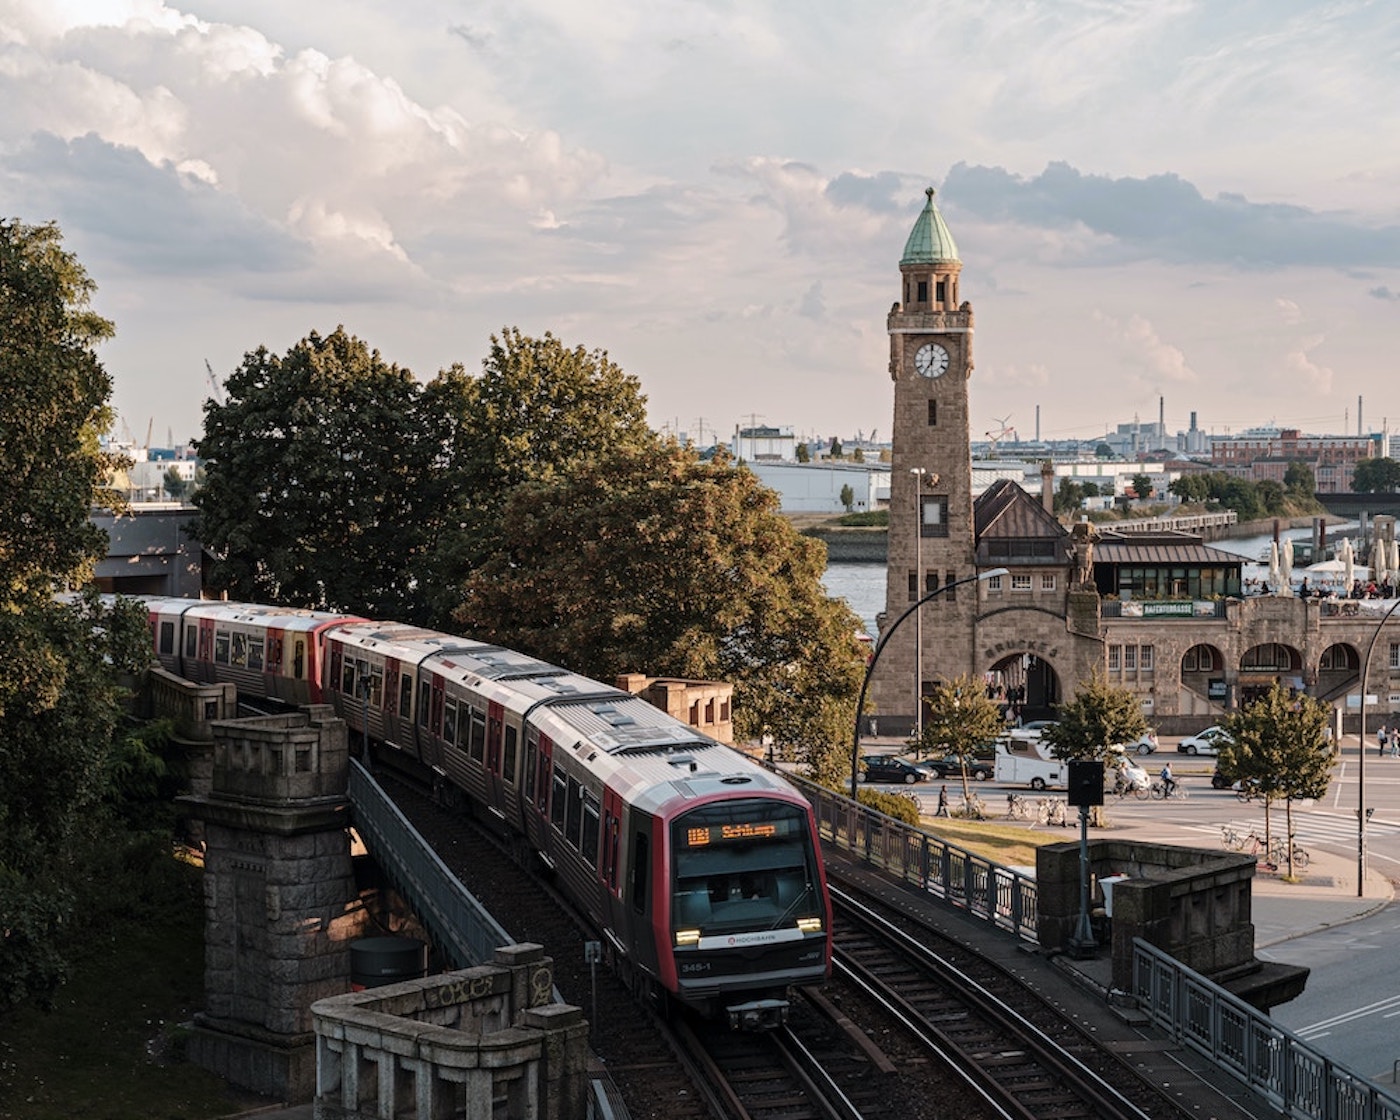 stedentrip met de trein, naar Hamburg